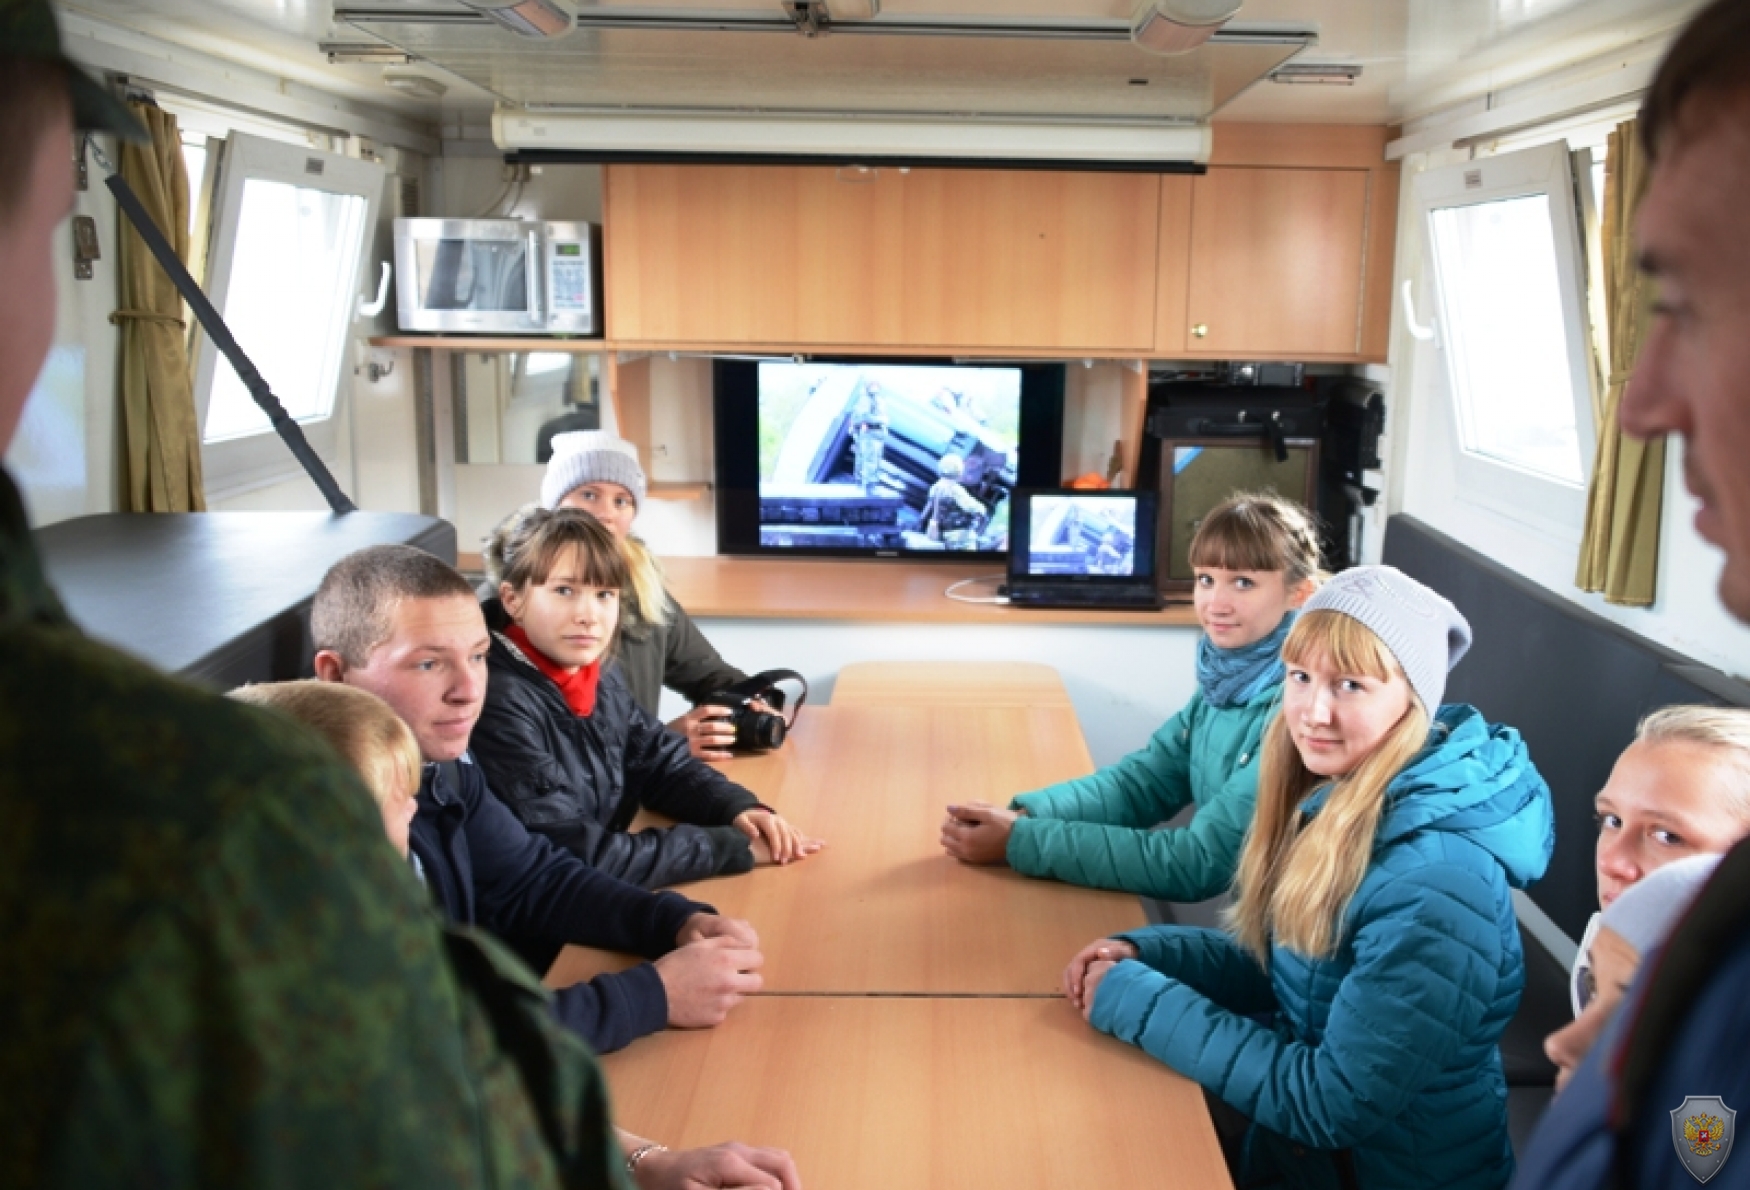 Тактико-специальное учение «Рельеф-2015» в Челябинской области. 5-10 октября 2015 года